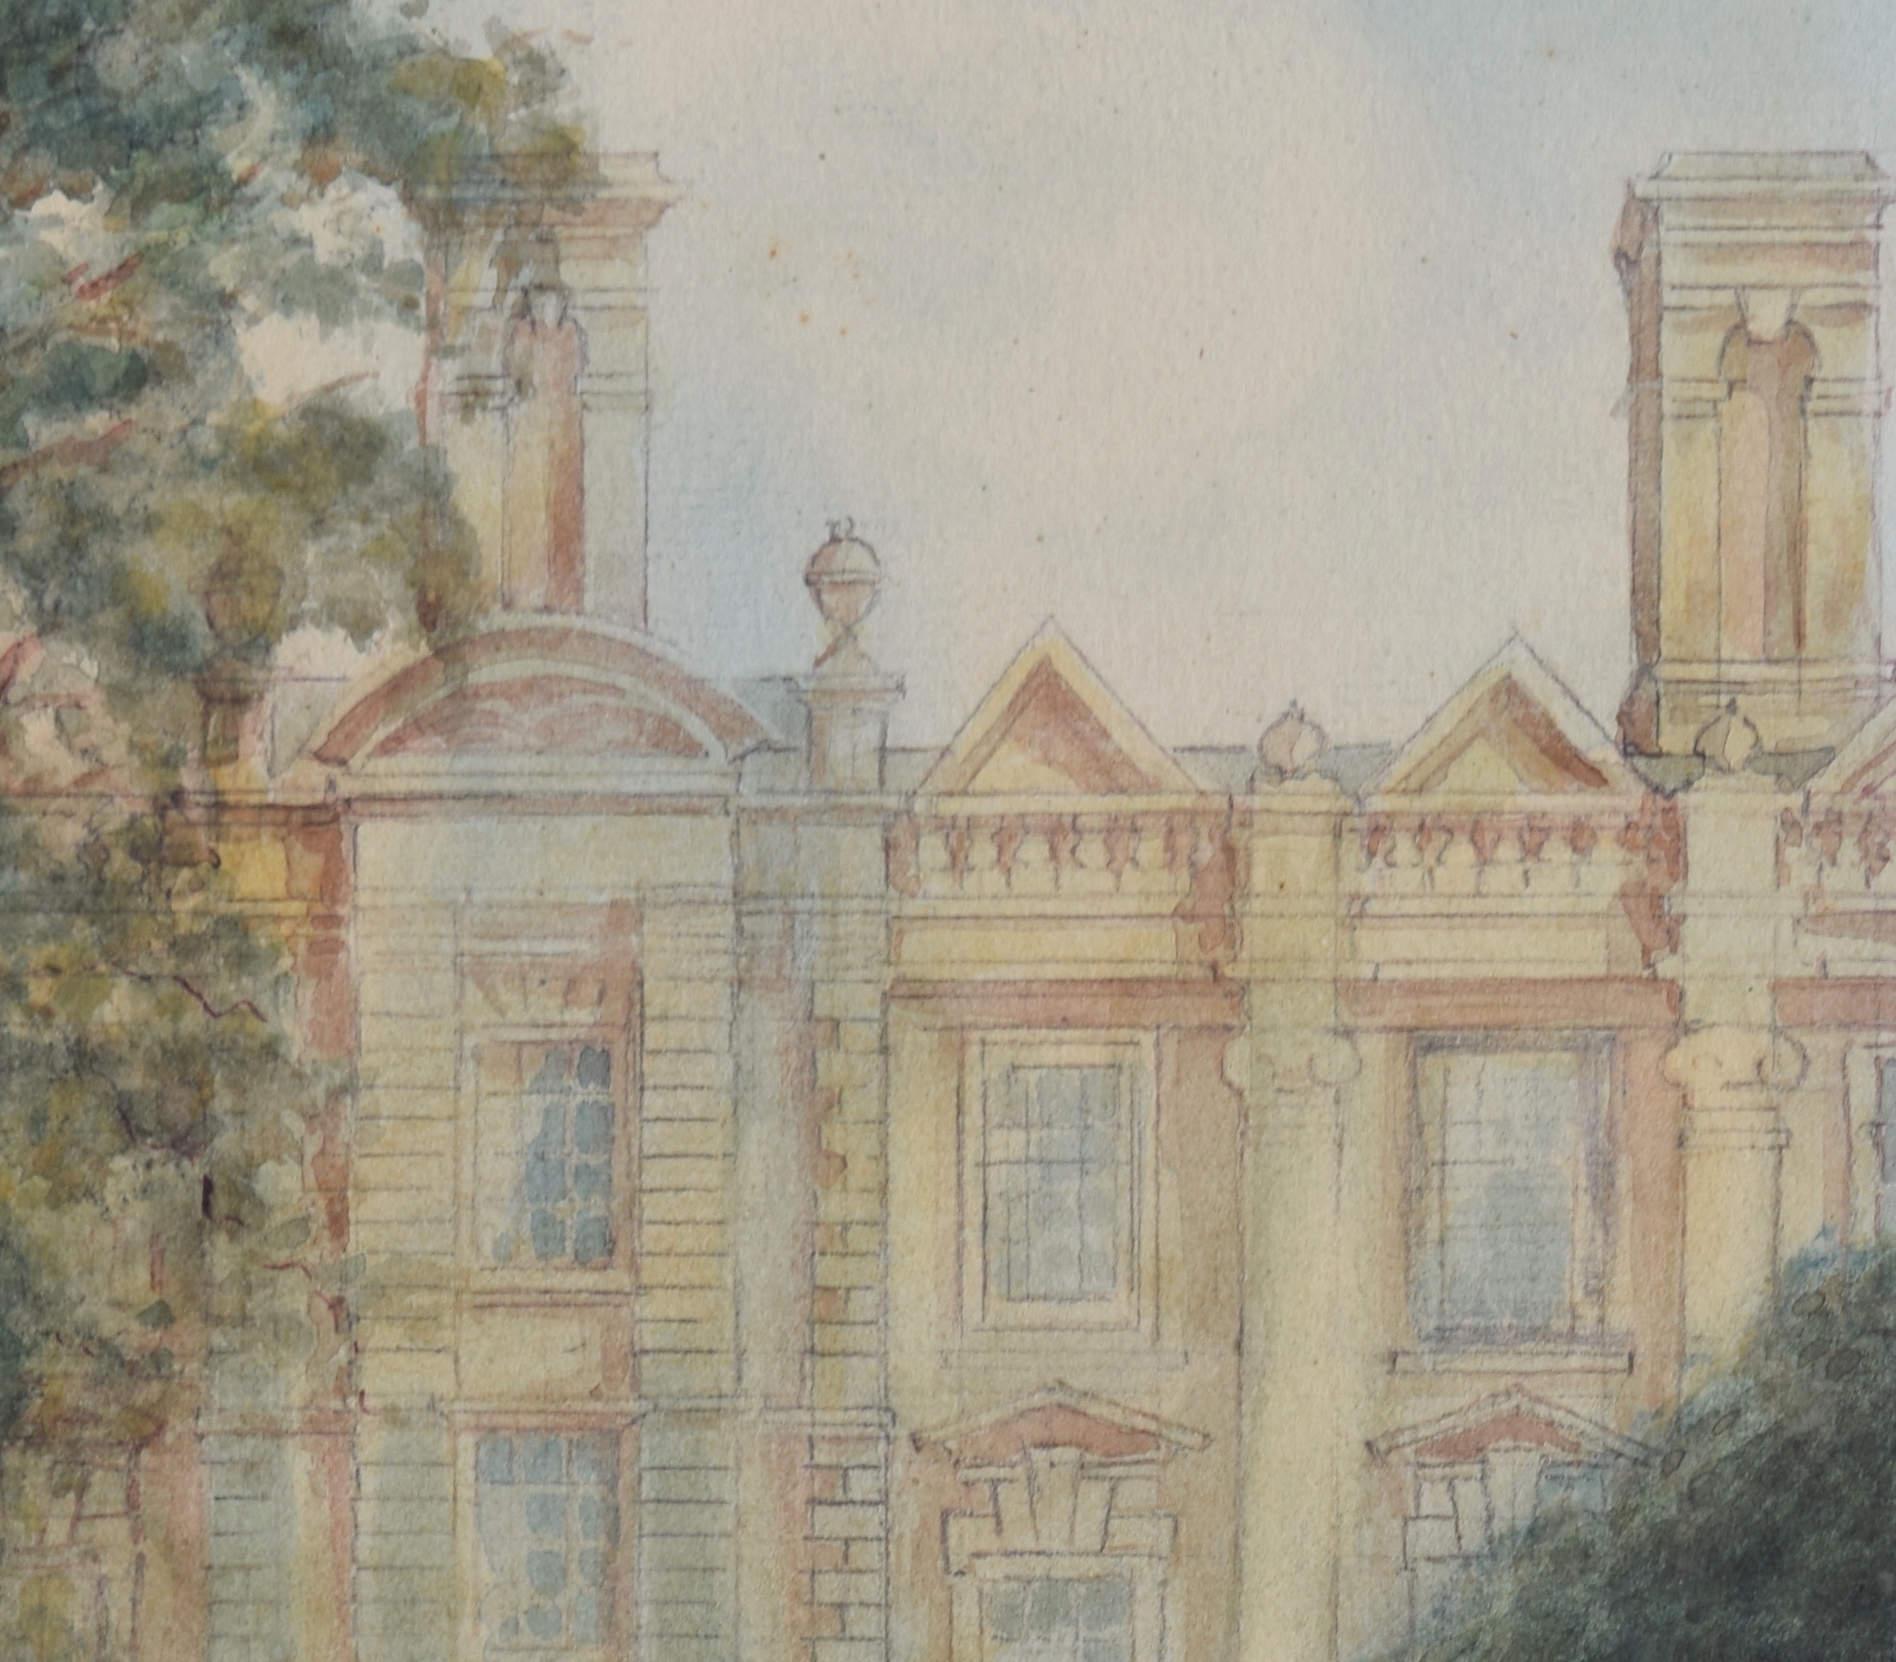 Clare College, Cambridge watercolour by Alfred Allan For Sale 2